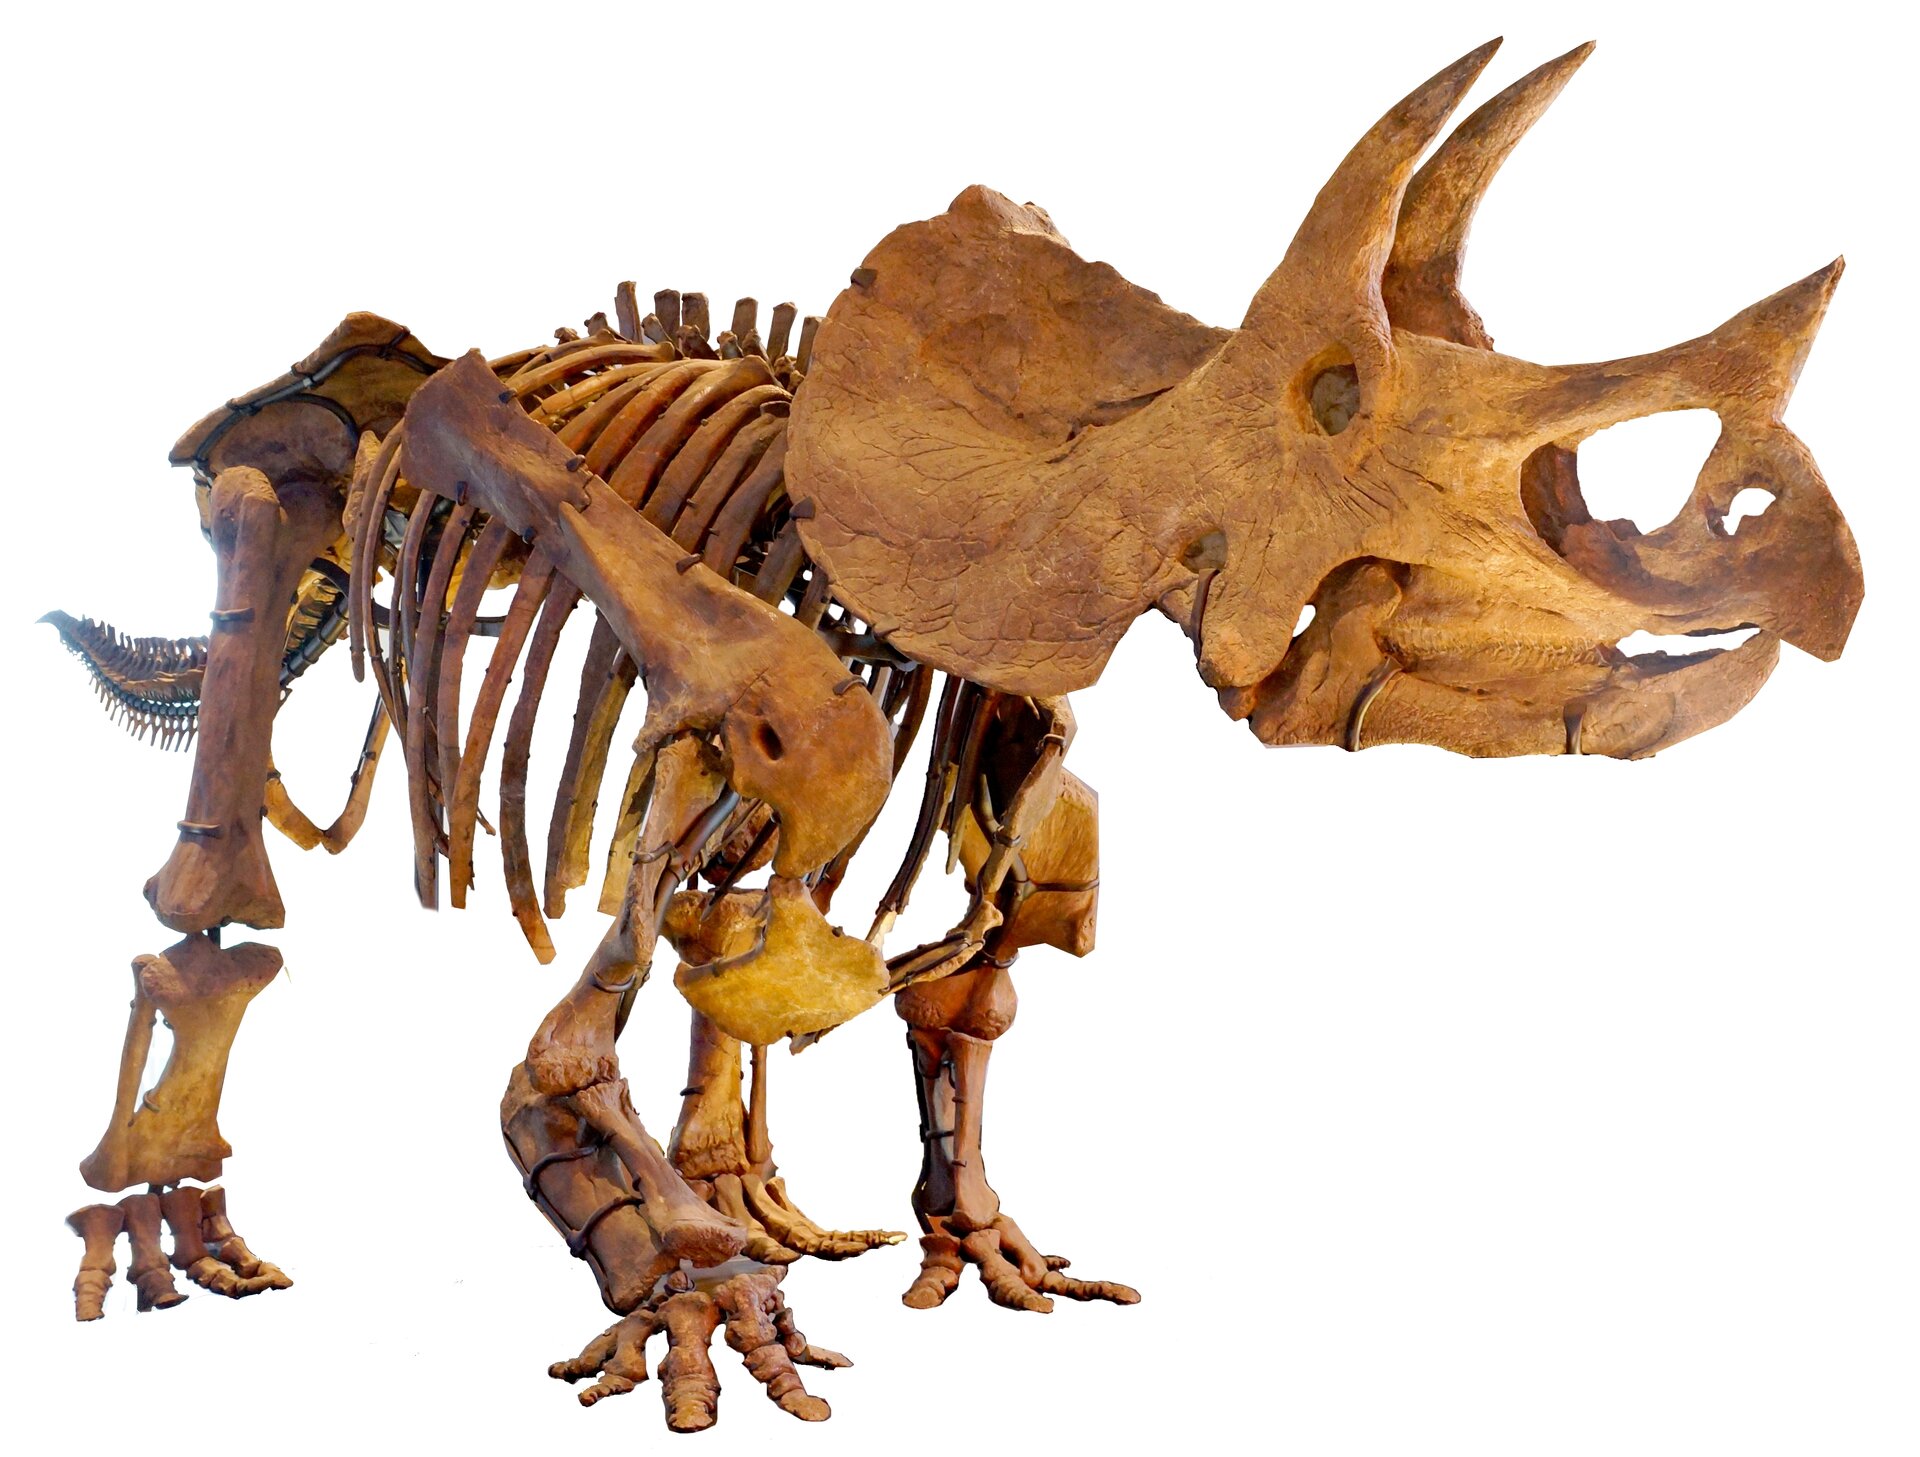 Zdjęcie przedstawia szkielet triceratopsa. To dinozaur z wielką kryzą, czyli pancernym kołnierzem z tyłu czaszki. Ogromna głowy stanowi niemal jedną trzecią długości jego ciała. Na czaszce znajdują się trzy rogi. Jeden, krótszy znajduje się na pysku zwierzęcia. To róg nosowy. Dwa długie rogi nad oczami. Dinozaur ma solidne zbudowany, bezzębny dziób. Ma masywną budowę ciała i cztery, czteropalczaste kończyny dolne. Kończyny są ustawione stosunkowo szeroko, nieco na zewnątrz. Natomiast tylne całkowicie pionowo. Dinozaury ma liczne żebra. Jego ciało zakończone jest krótkim, skierowanym ku dołowi ogonem. Ogon zbudowany był z licznych kości przypominających igły.